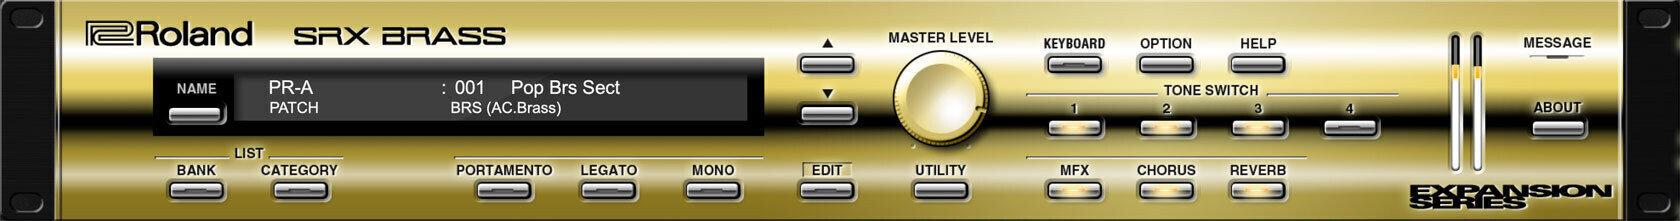 Logiciel de studio Instruments virtuels Roland SRX BRASS Key (Produit numérique)